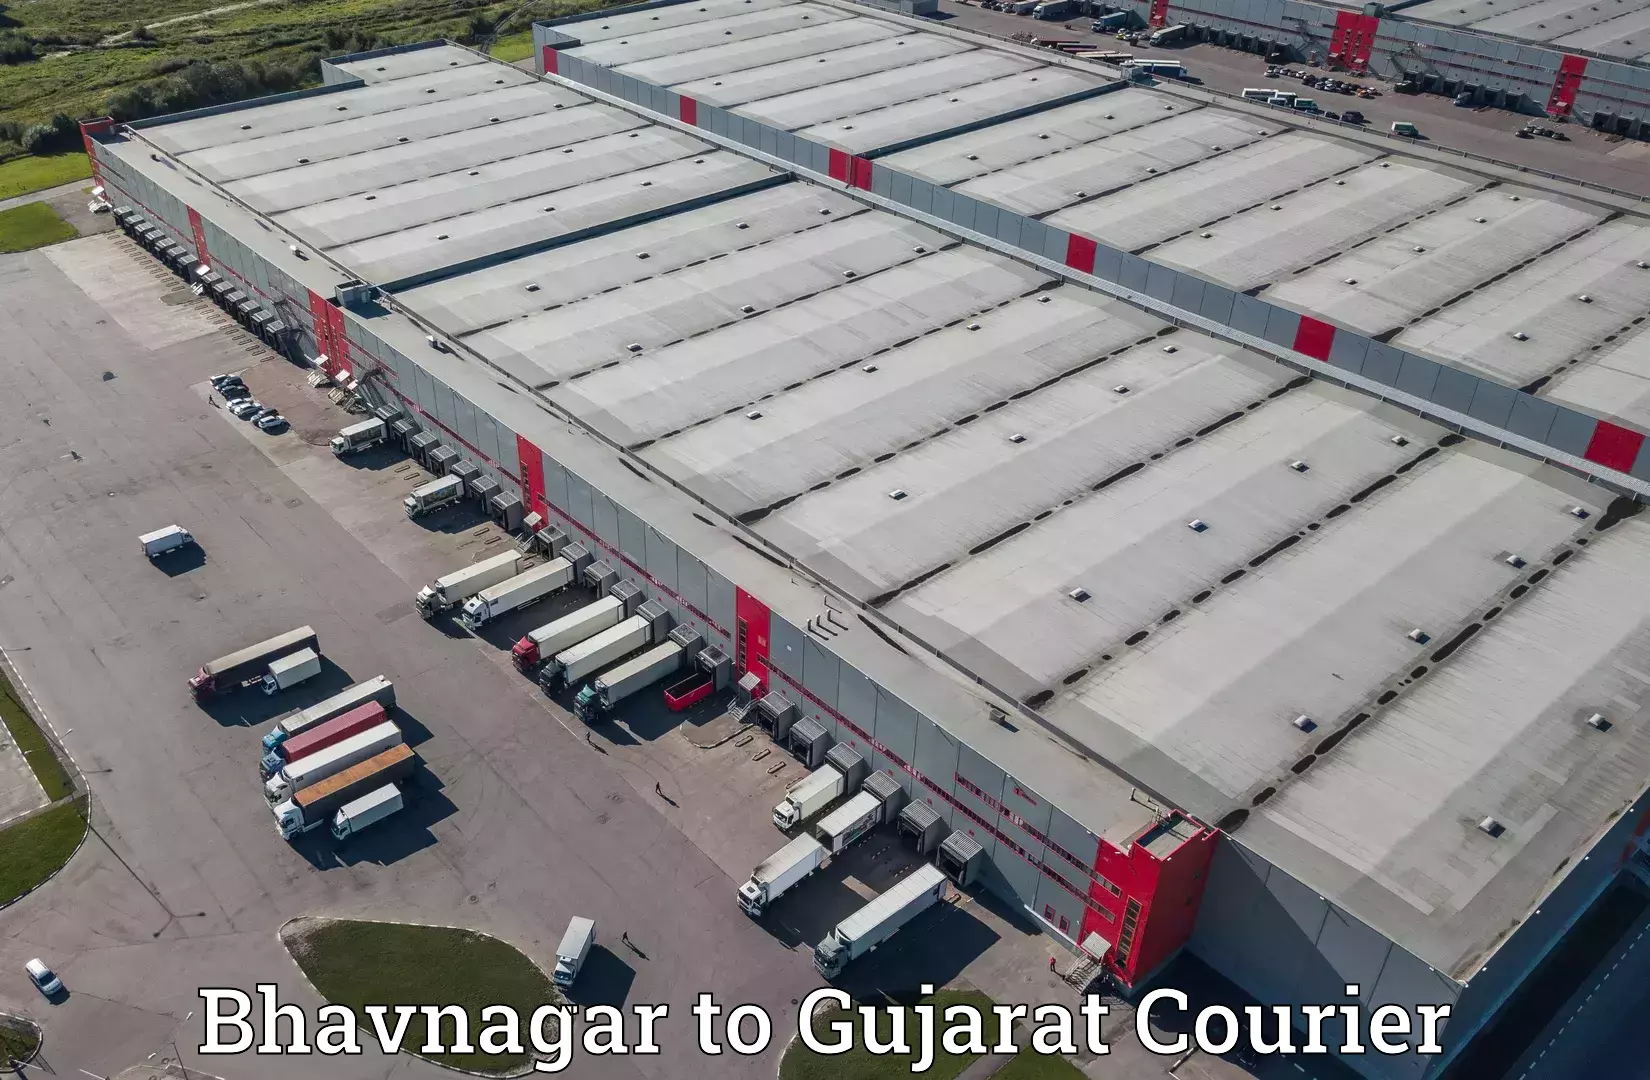 Cross-border shipping in Bhavnagar to Surat